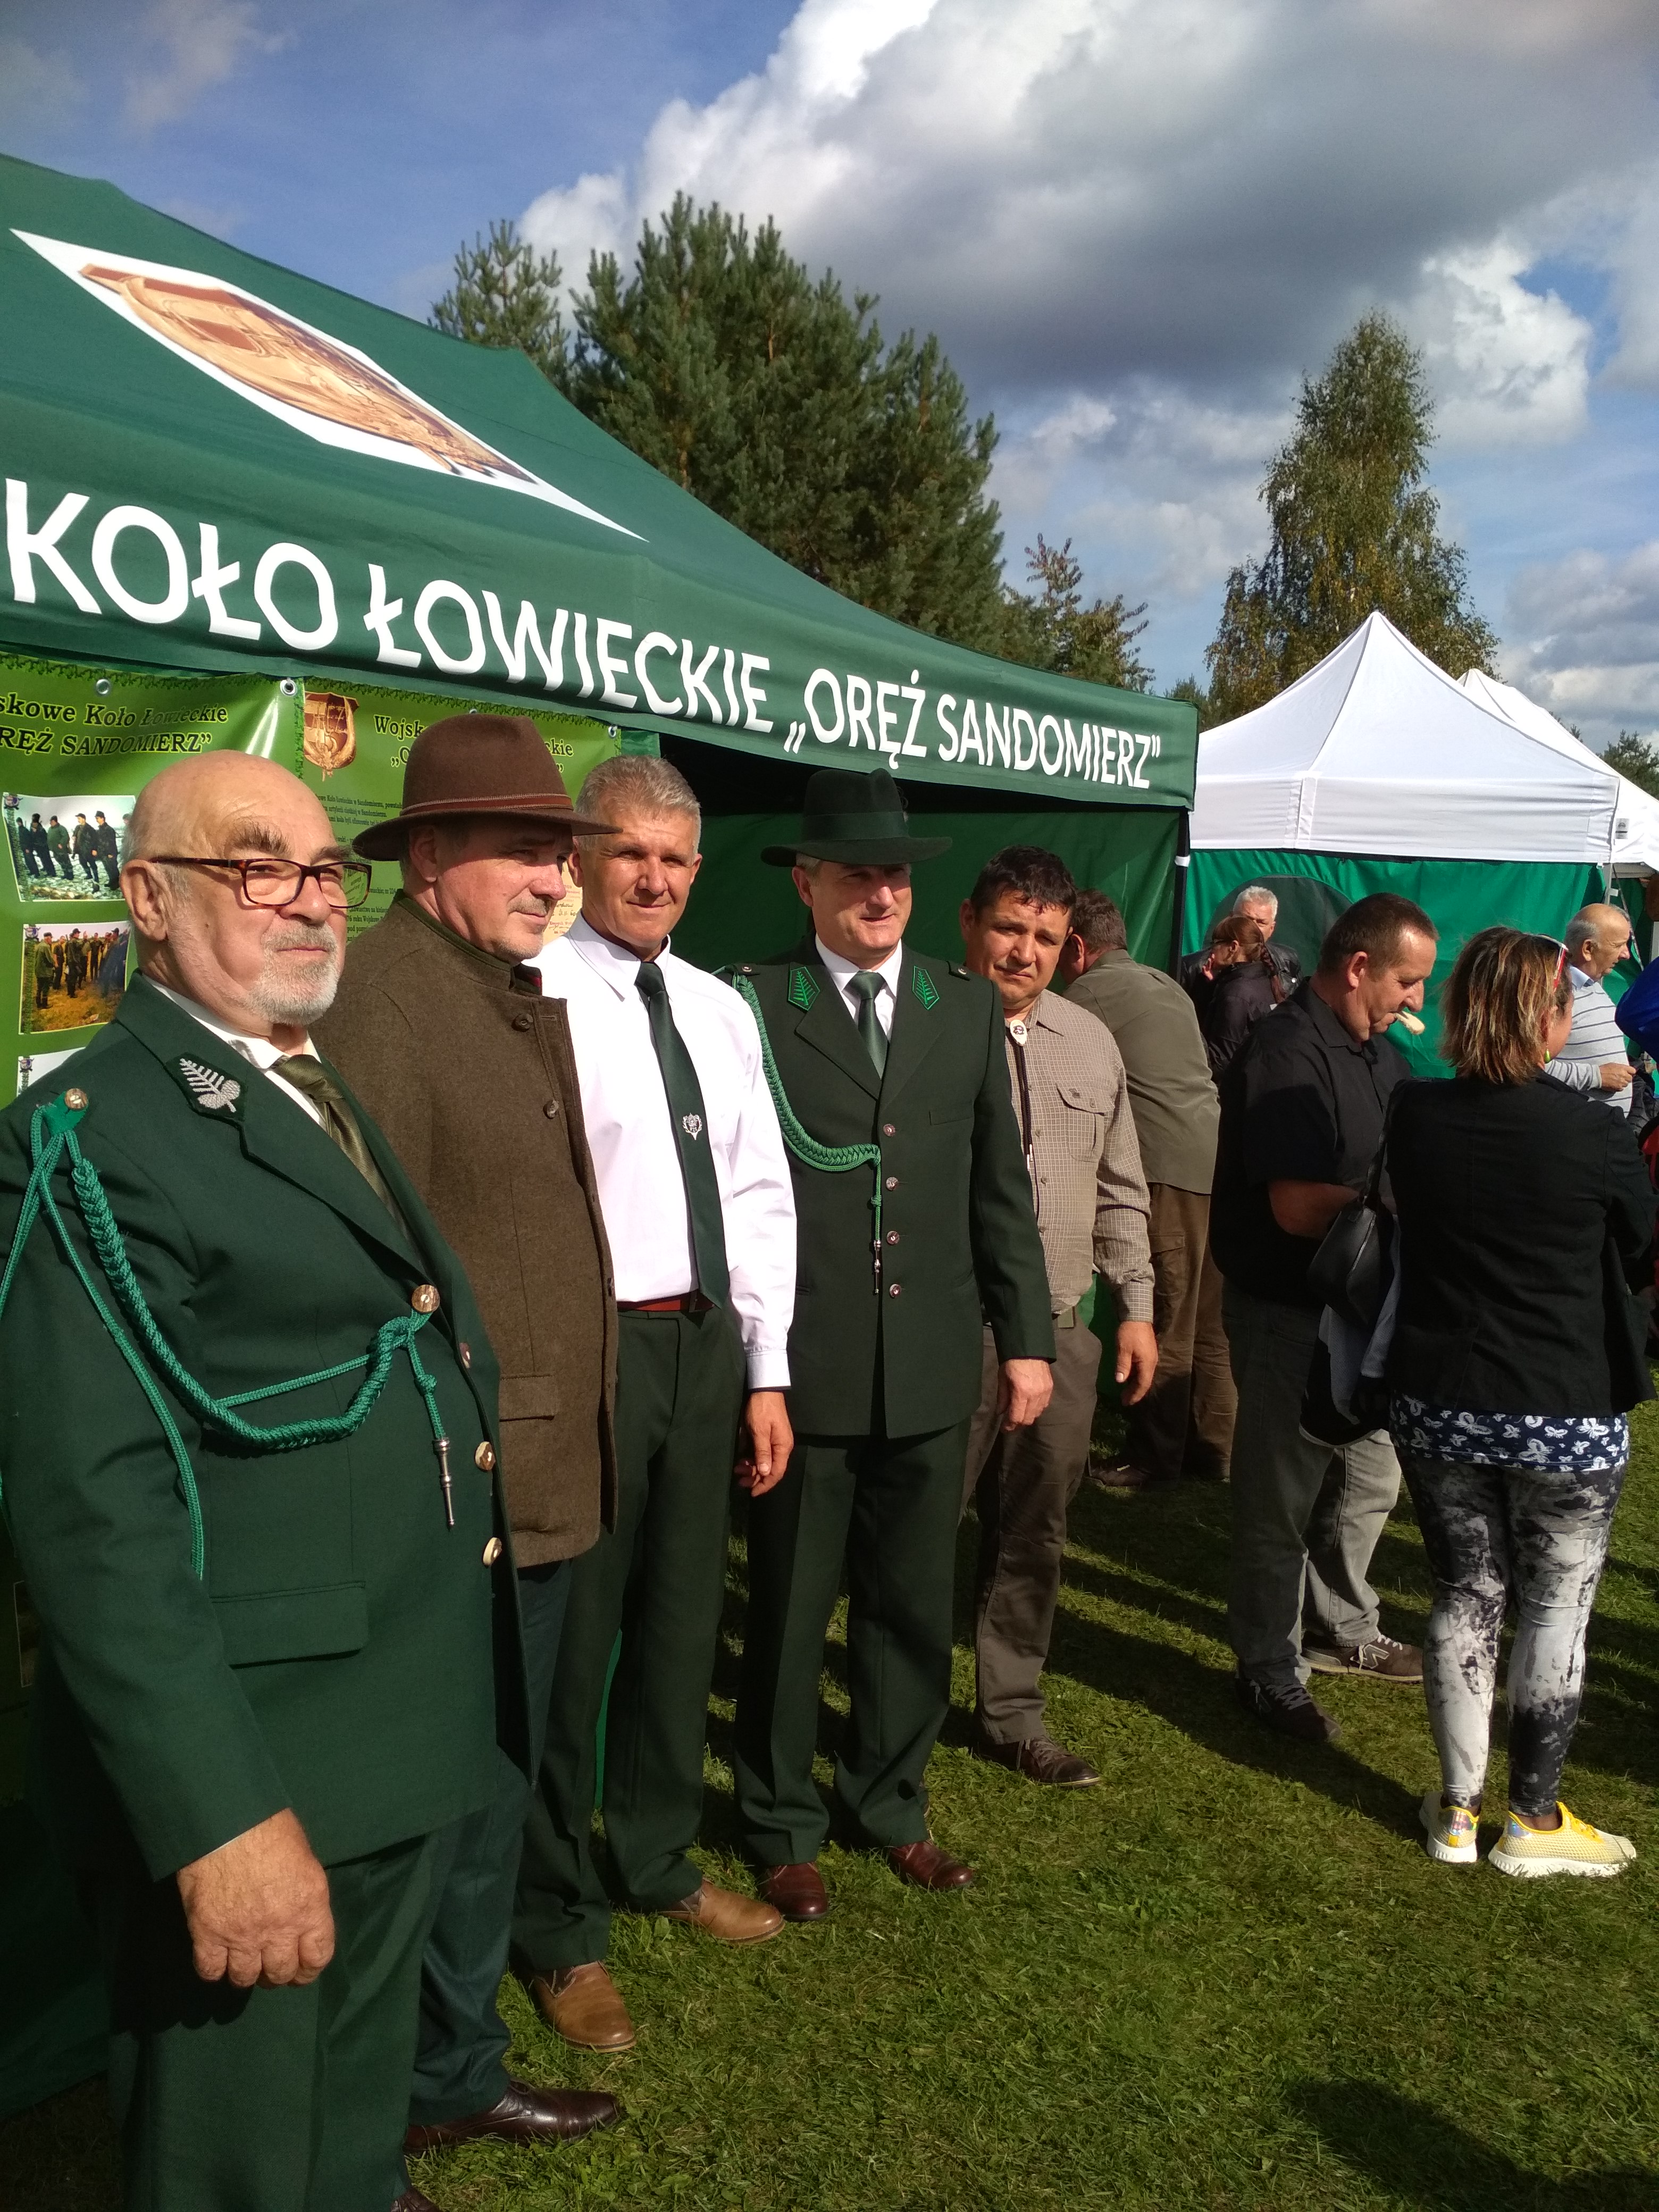 Rok 2019  Wojskowego Koła Łowieckiego „Oręż Sandomierz”  – wsparcie dla lokalnej społeczności, udział w imprezach okolicznościowych.